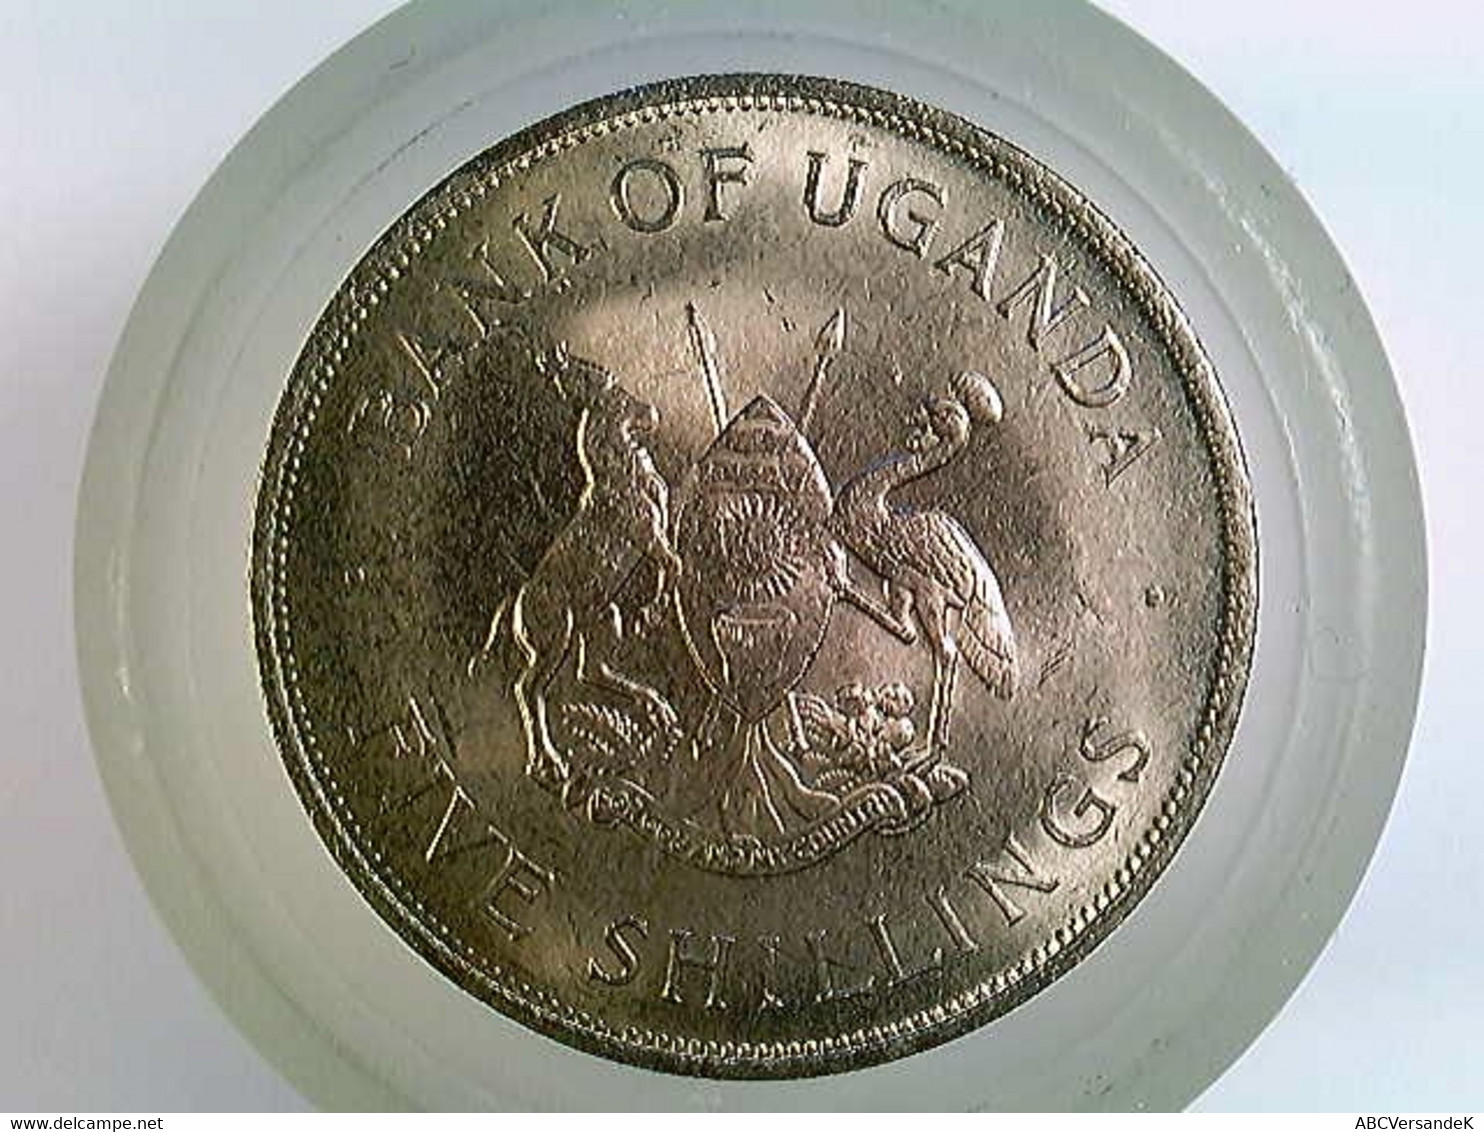 Münze Uganda, 5 Shilling 1968, FAO, TOP - Numismatik